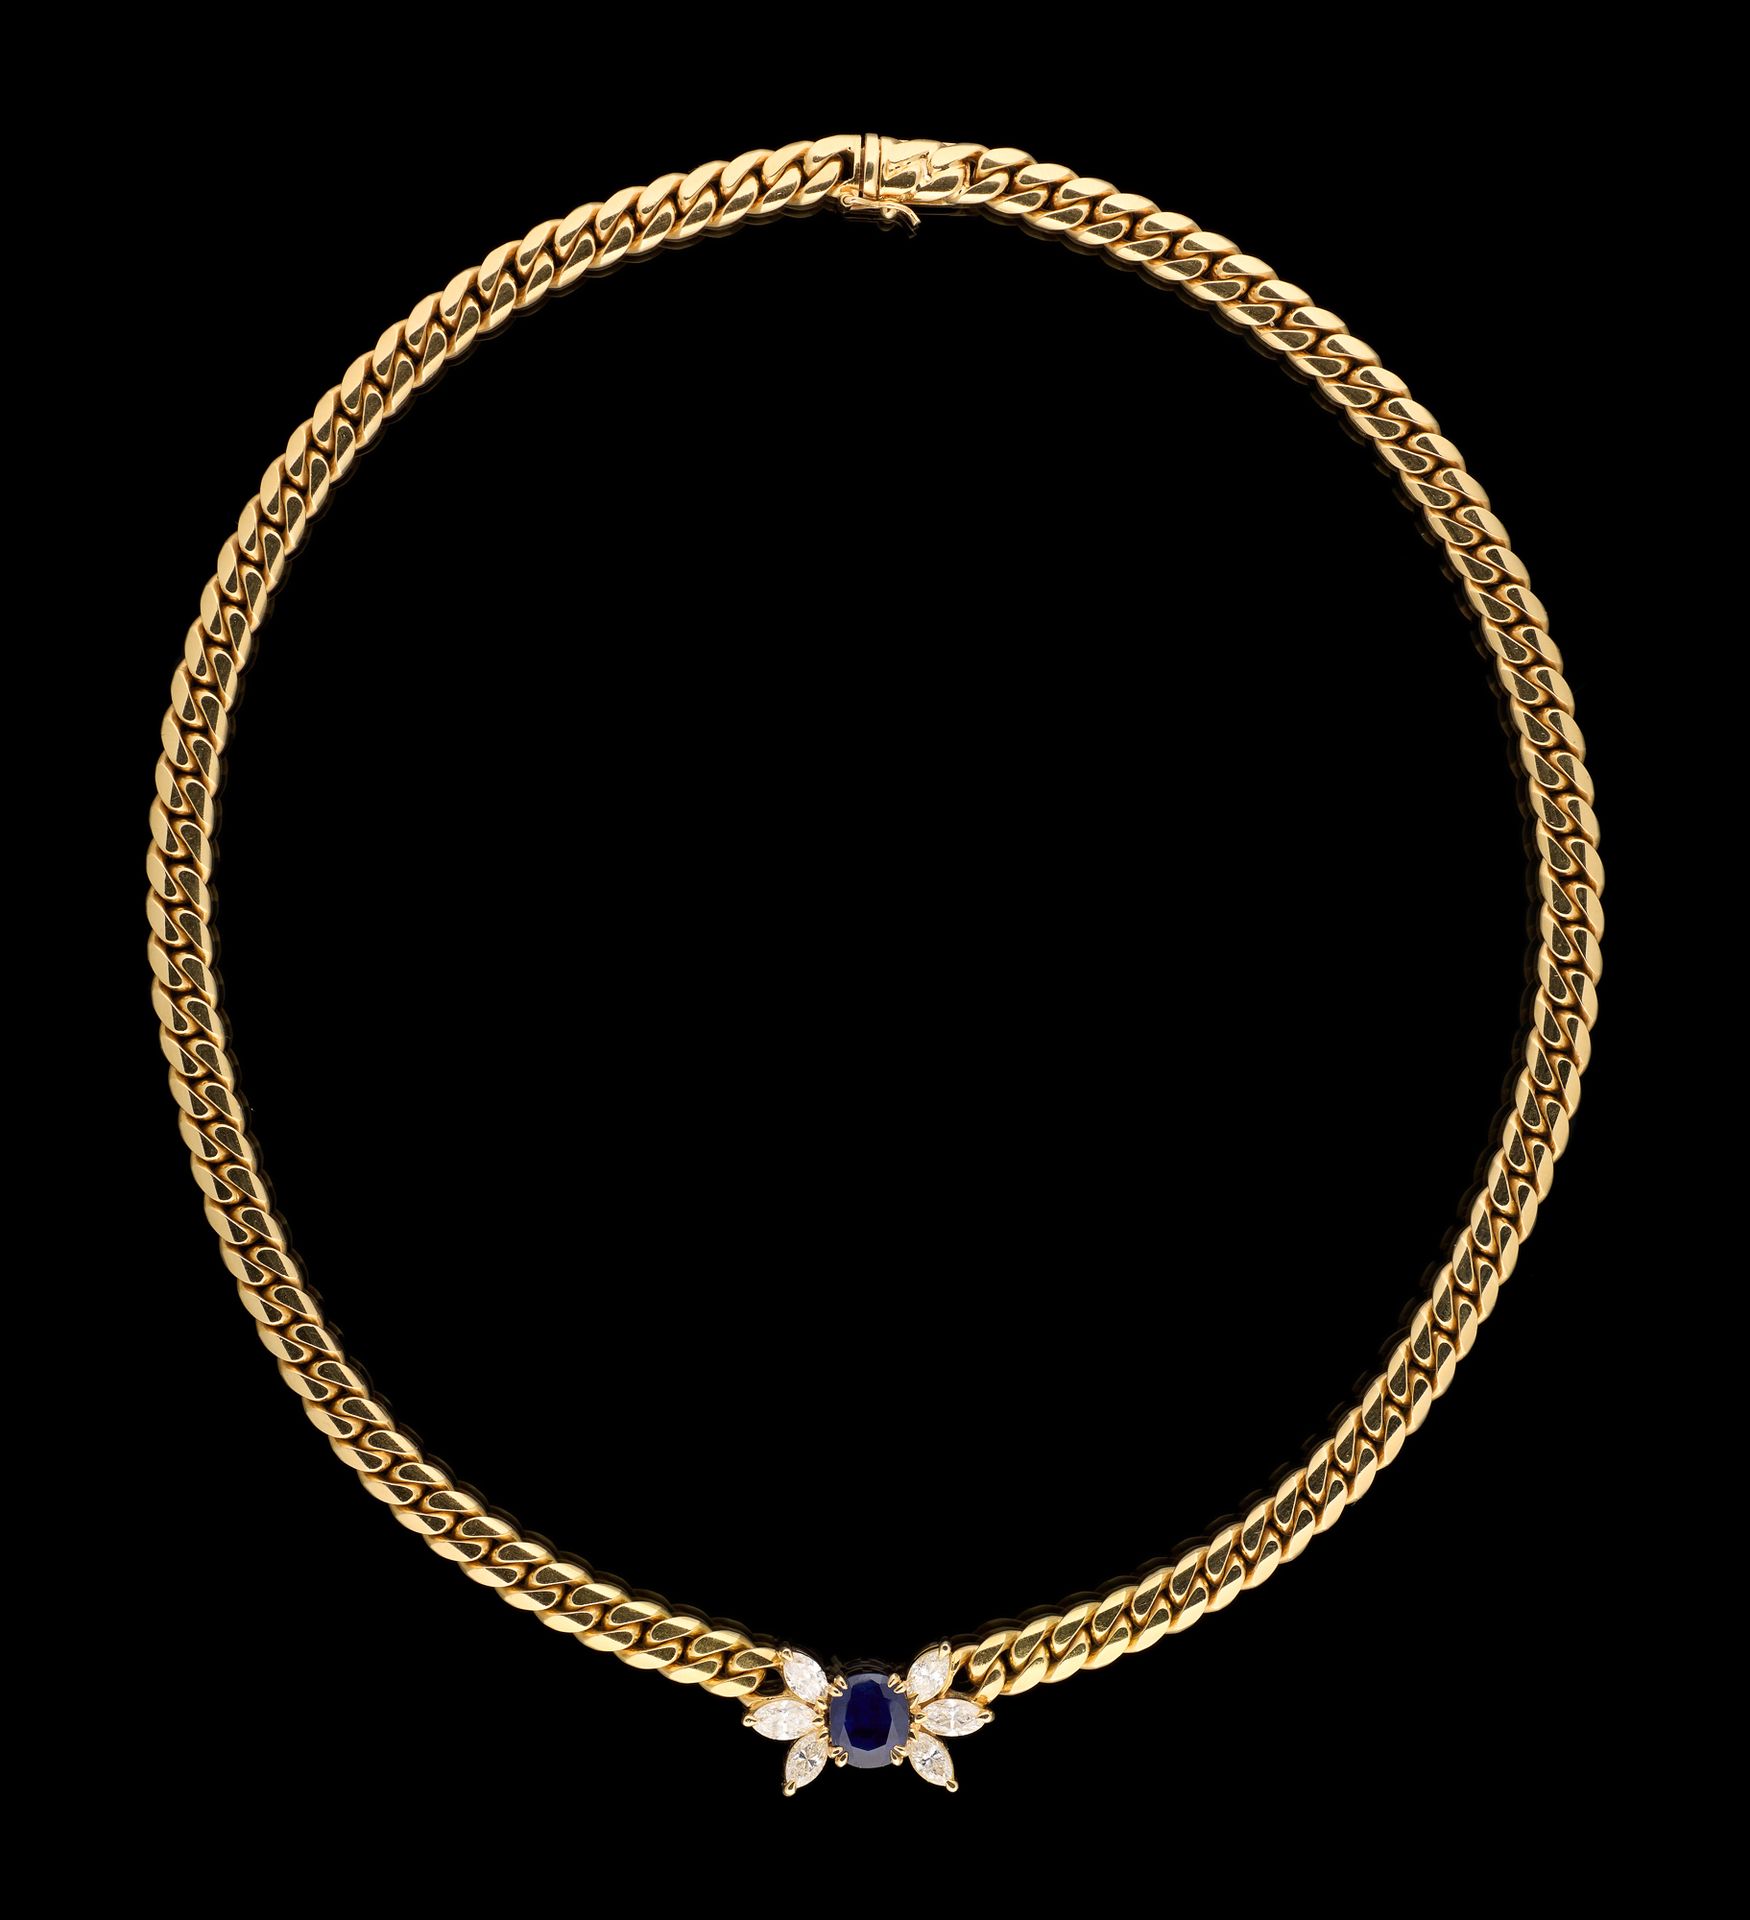 Wolfers. 珠宝：黄金项链，吊坠镶嵌了一颗重达+/-2.40克拉的天然蓝宝石和+/-1.80克拉的侯爵式切割钻石。

原有的Wolfers印记和小袋。

&hellip;